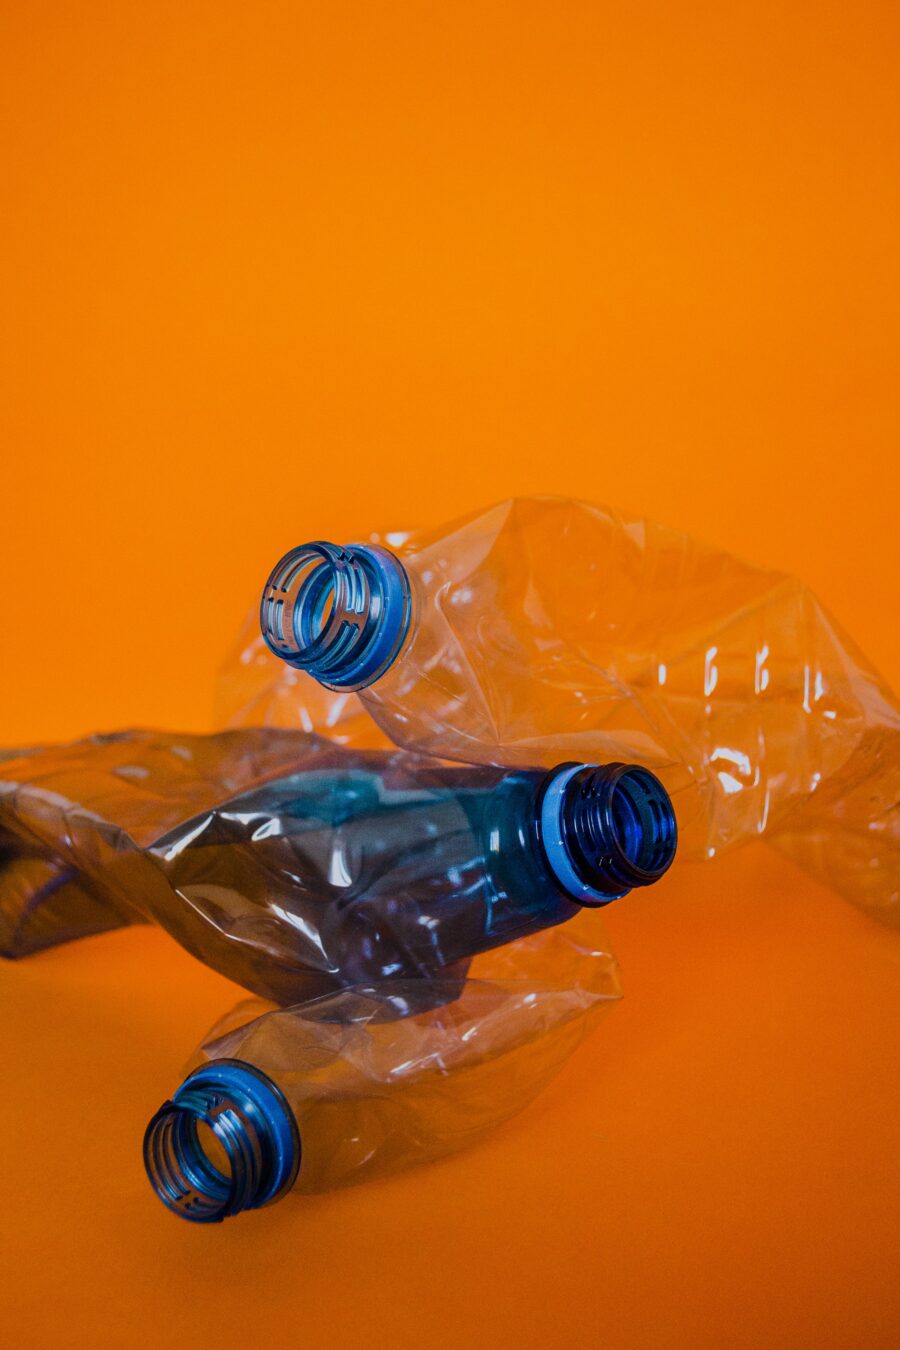 Leere und zerknüllte PET-Flaschen vor orangenem Hintergrund